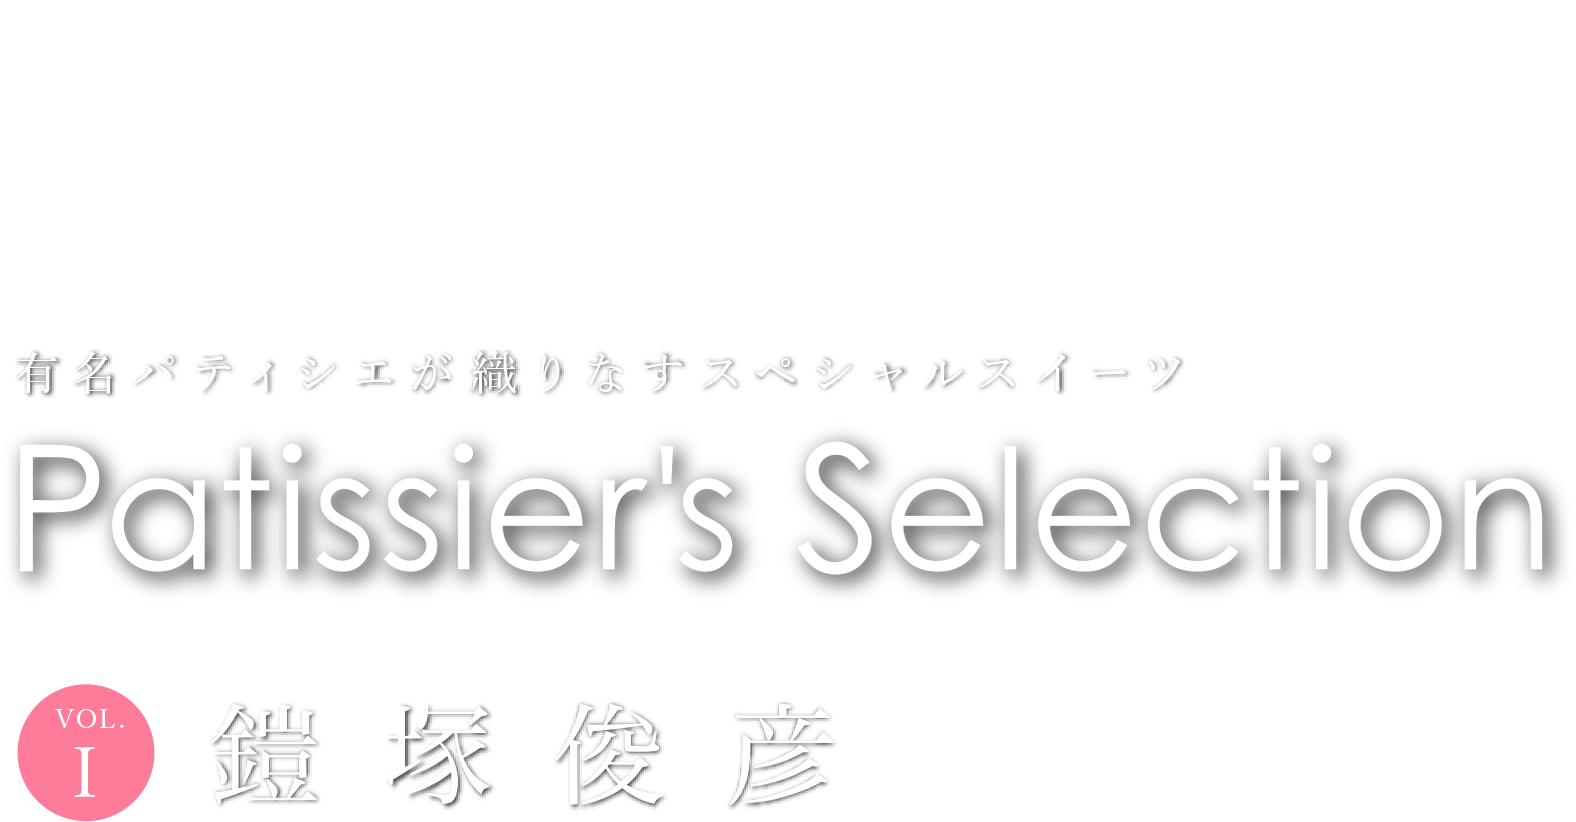 有名パティシエのスペシャルスイーツをお届けするパティシエズ・セレクション。第1回はToshi Yoroizuka（トシ・ヨロイヅカ）